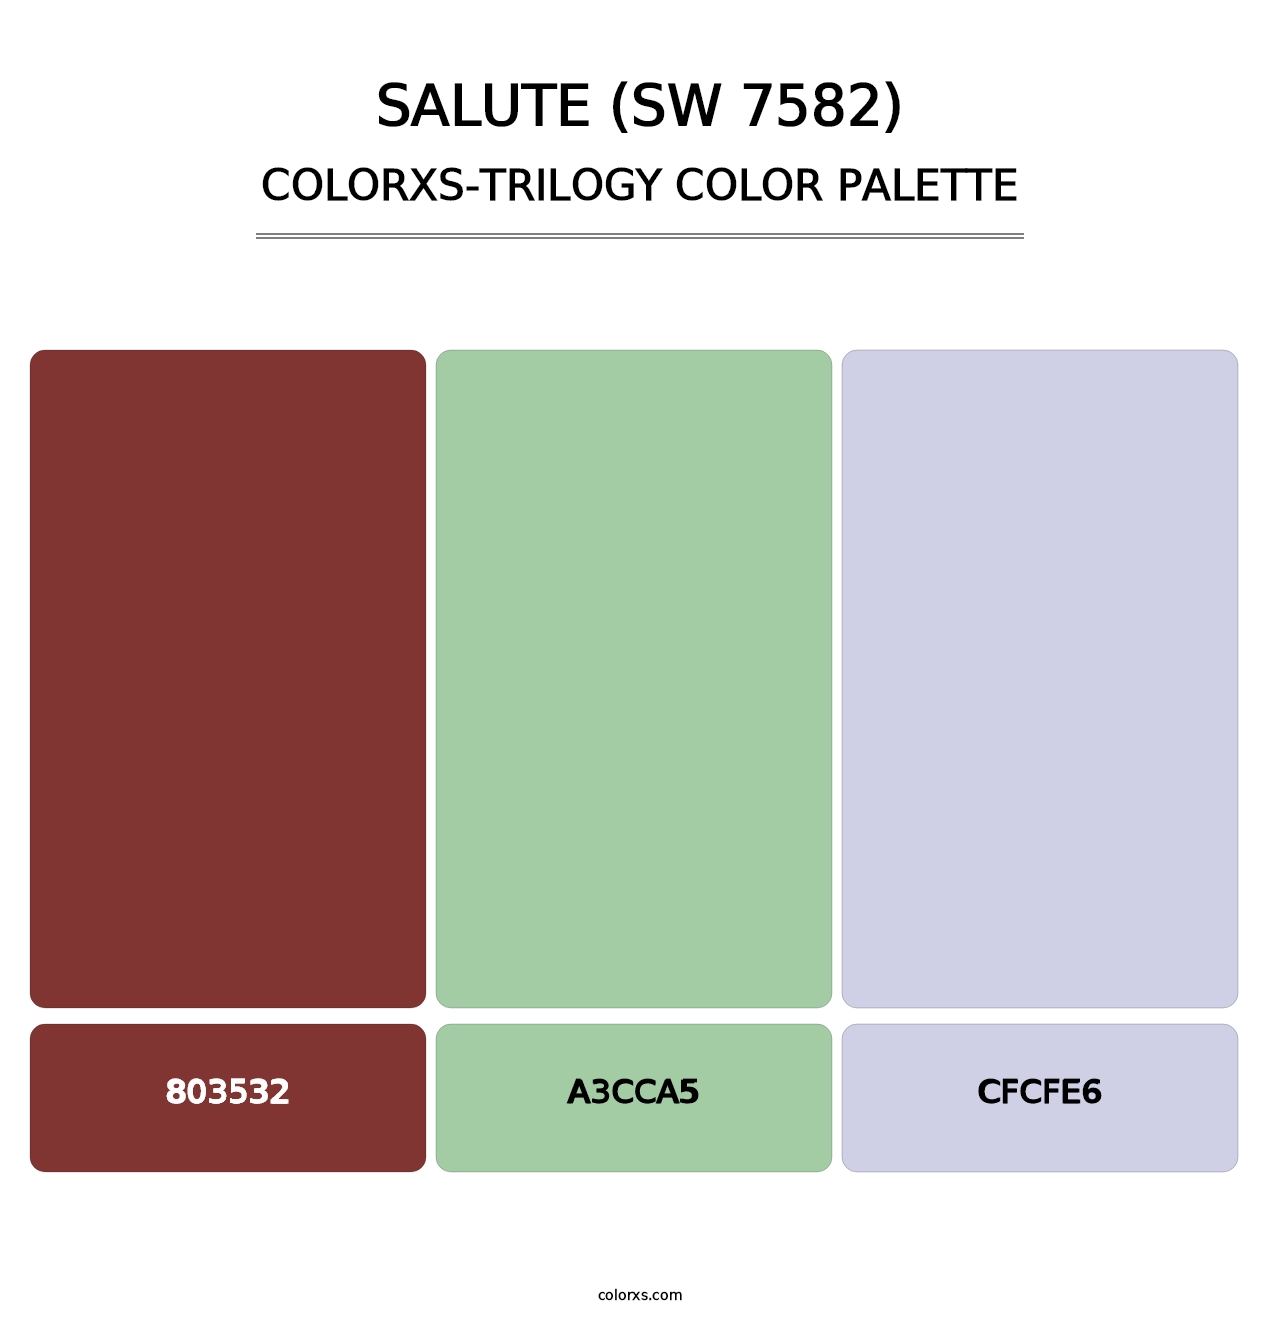 Salute (SW 7582) - Colorxs Trilogy Palette